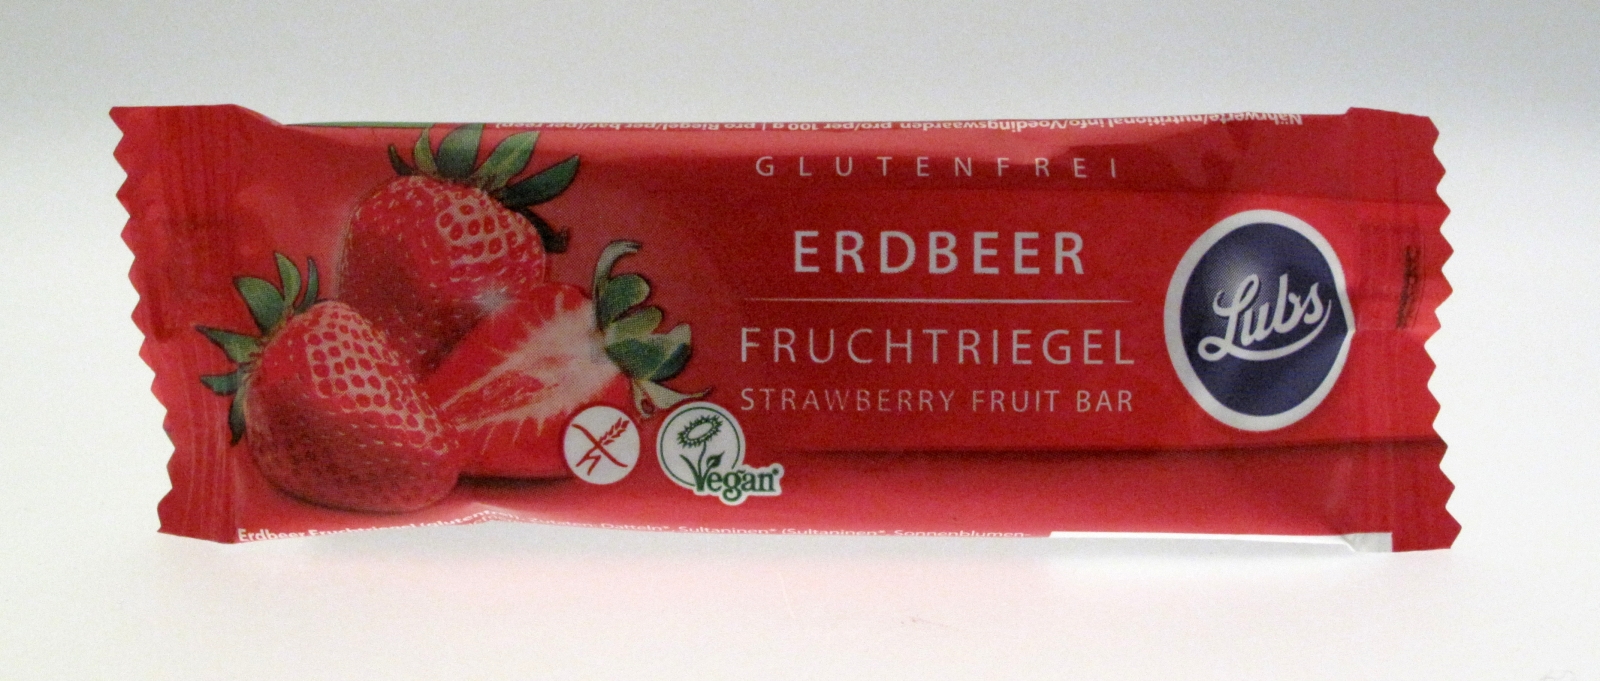    Erdbeere Premium Fruchtriegel Glutenfrei
